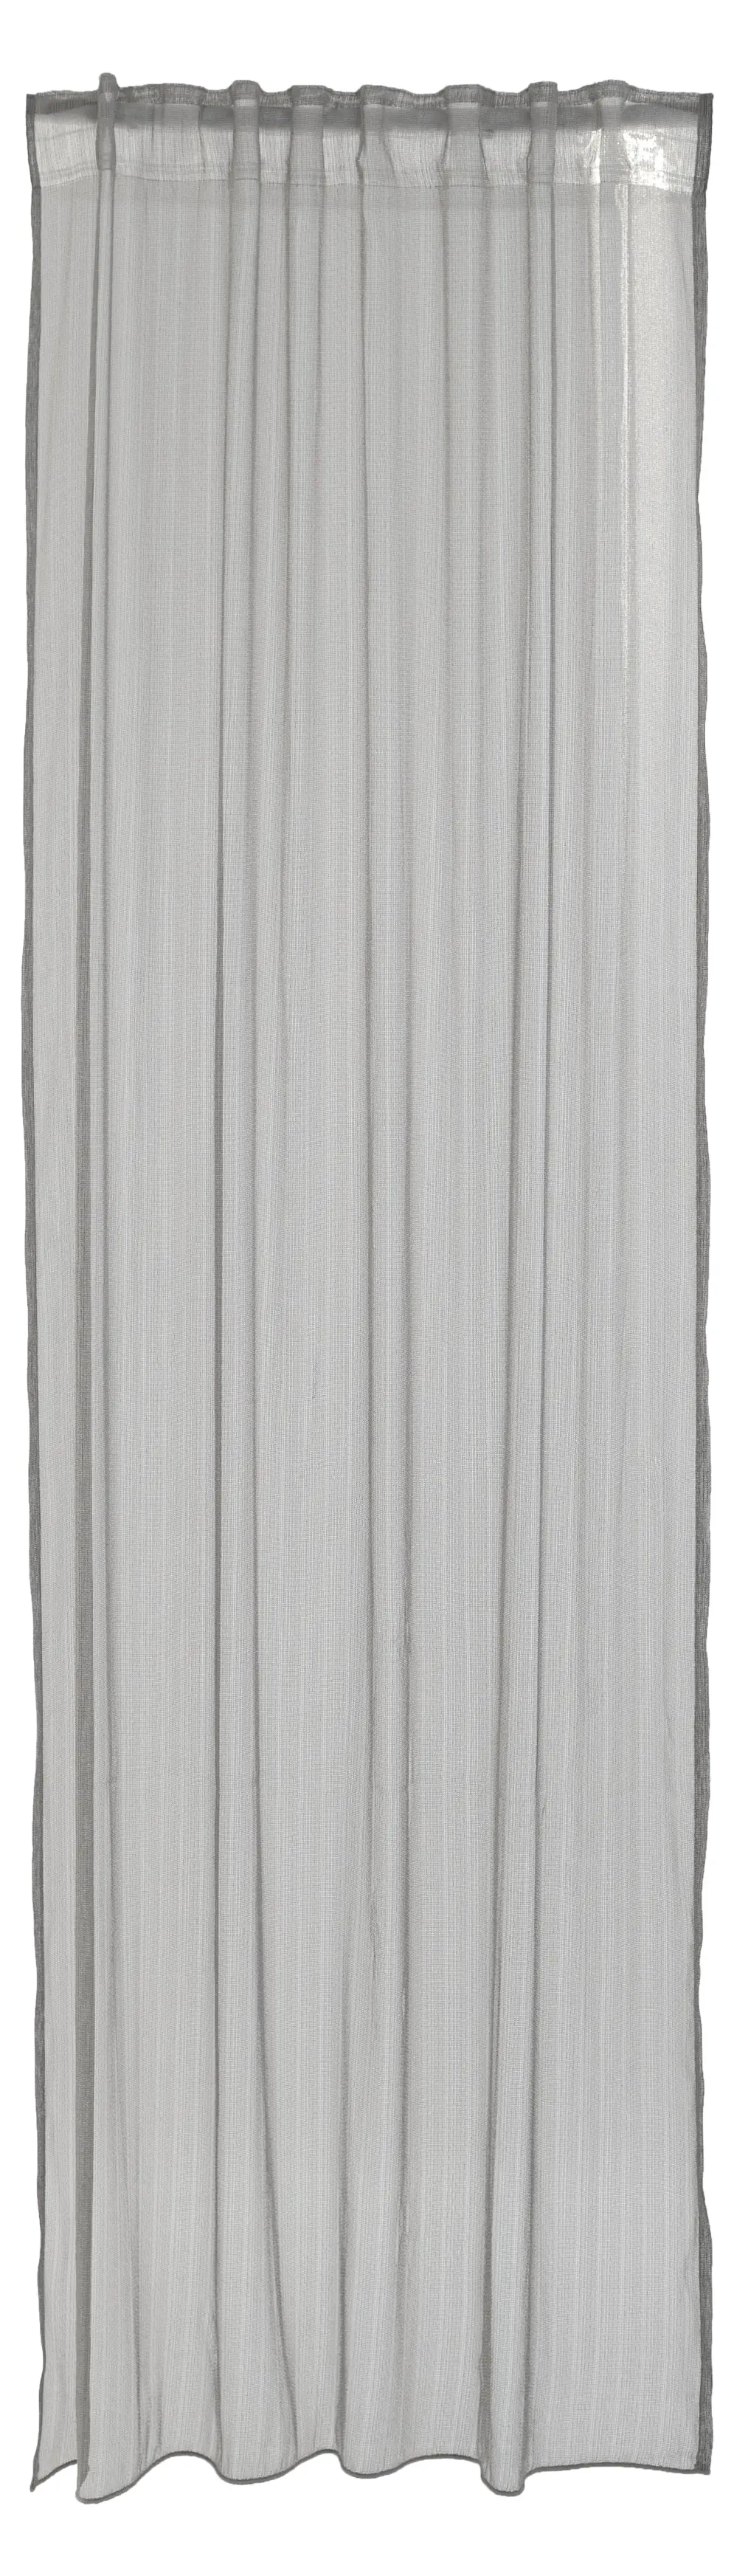 modern Vorhang streifen silber